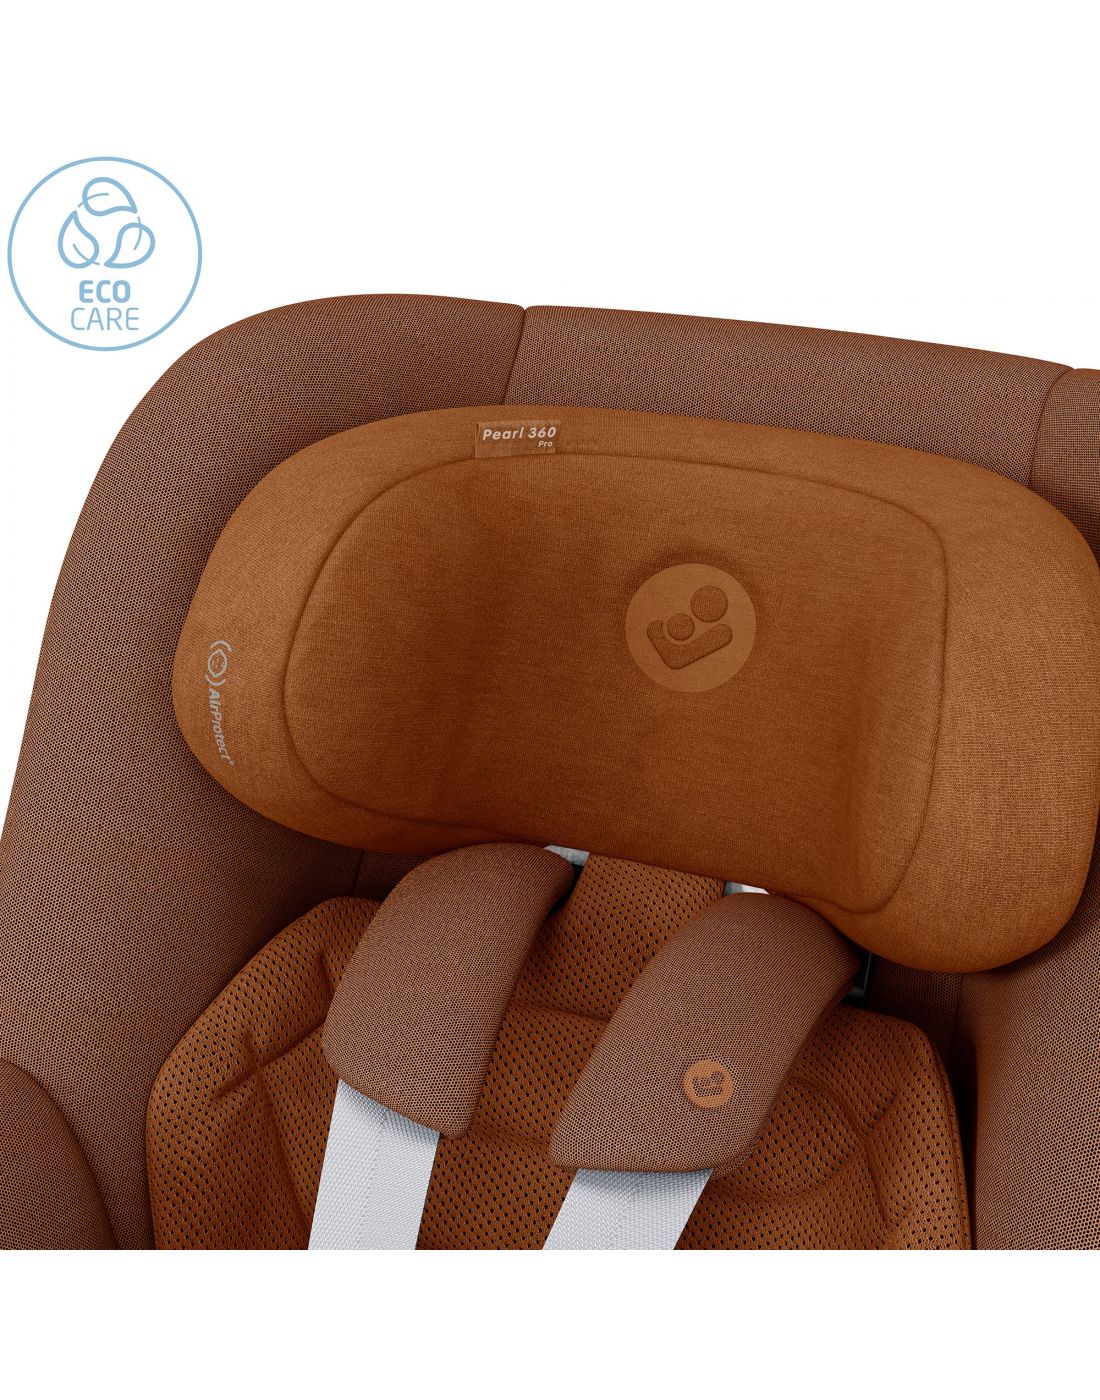 Maxi Cosi Kids Car Seat Pearl 360 PRO Authentic Cognac